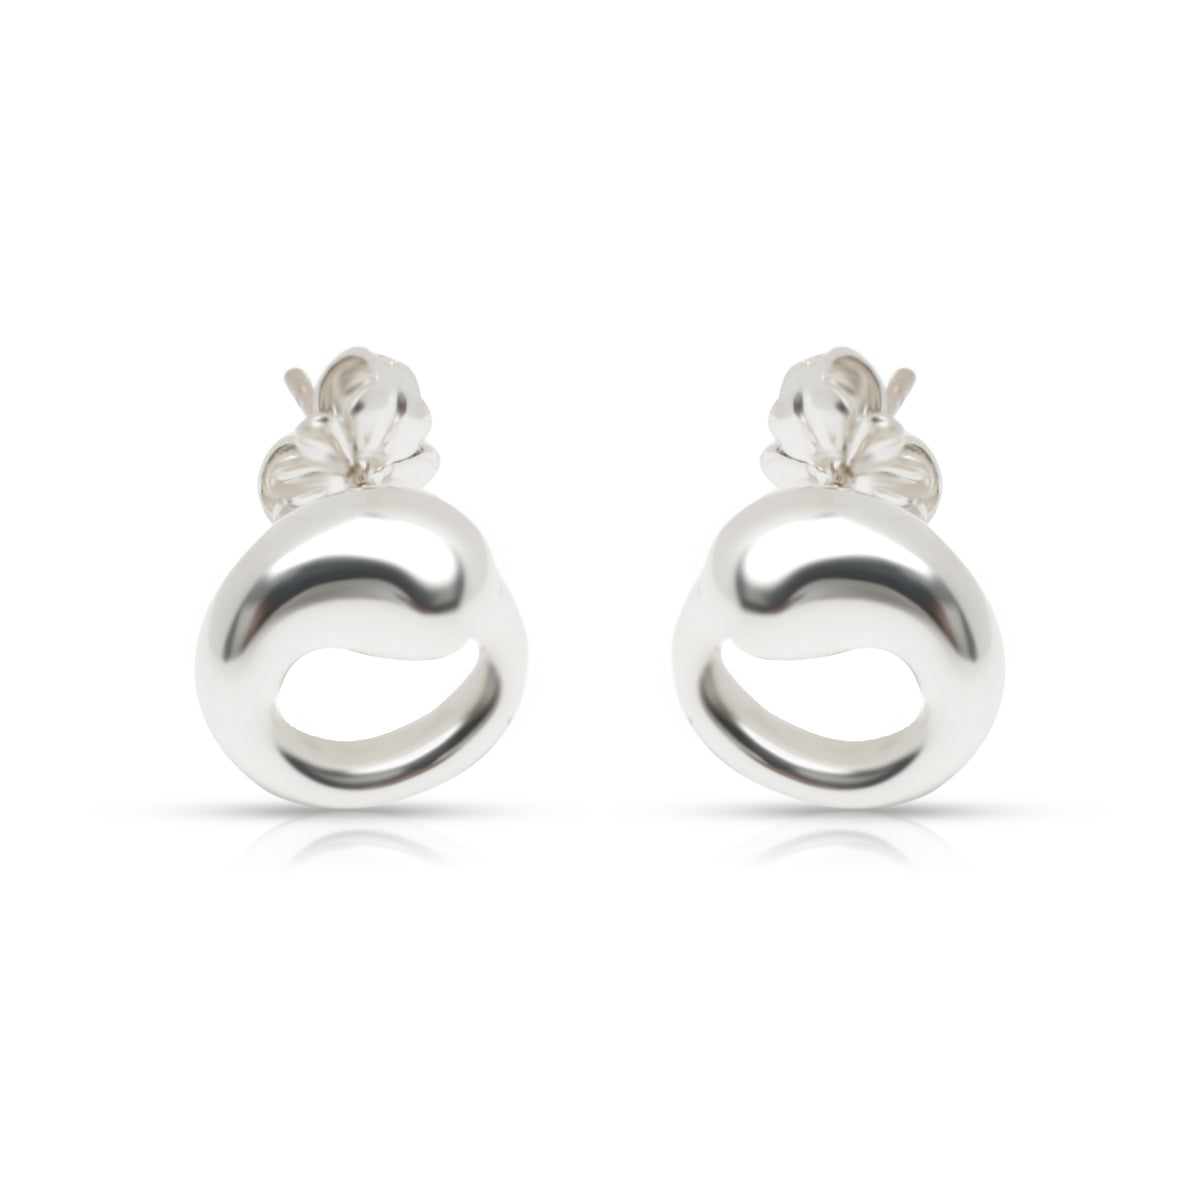 Tiffany & Co. Elsa Peretti Eternal Stud Earrings in Sterling Silver